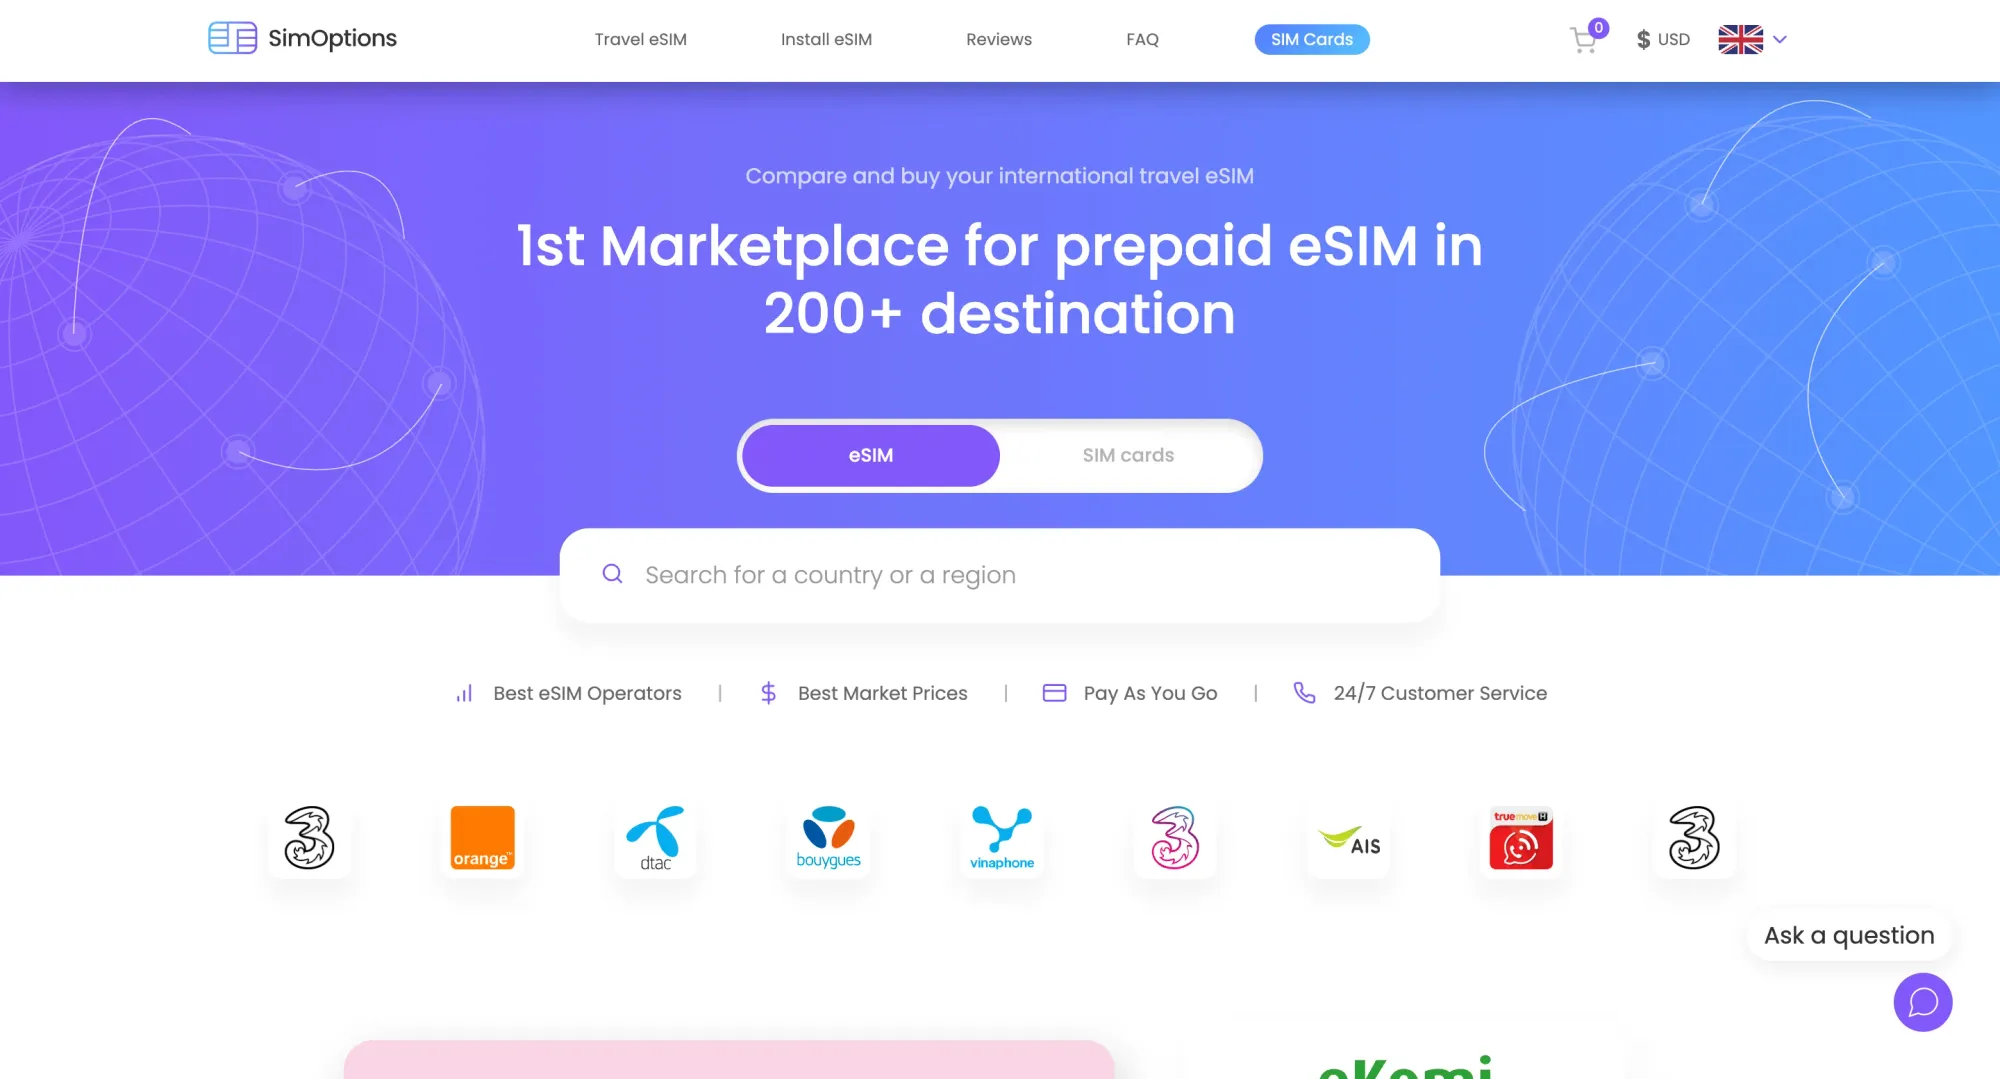 SimOptions eSIM Homepage